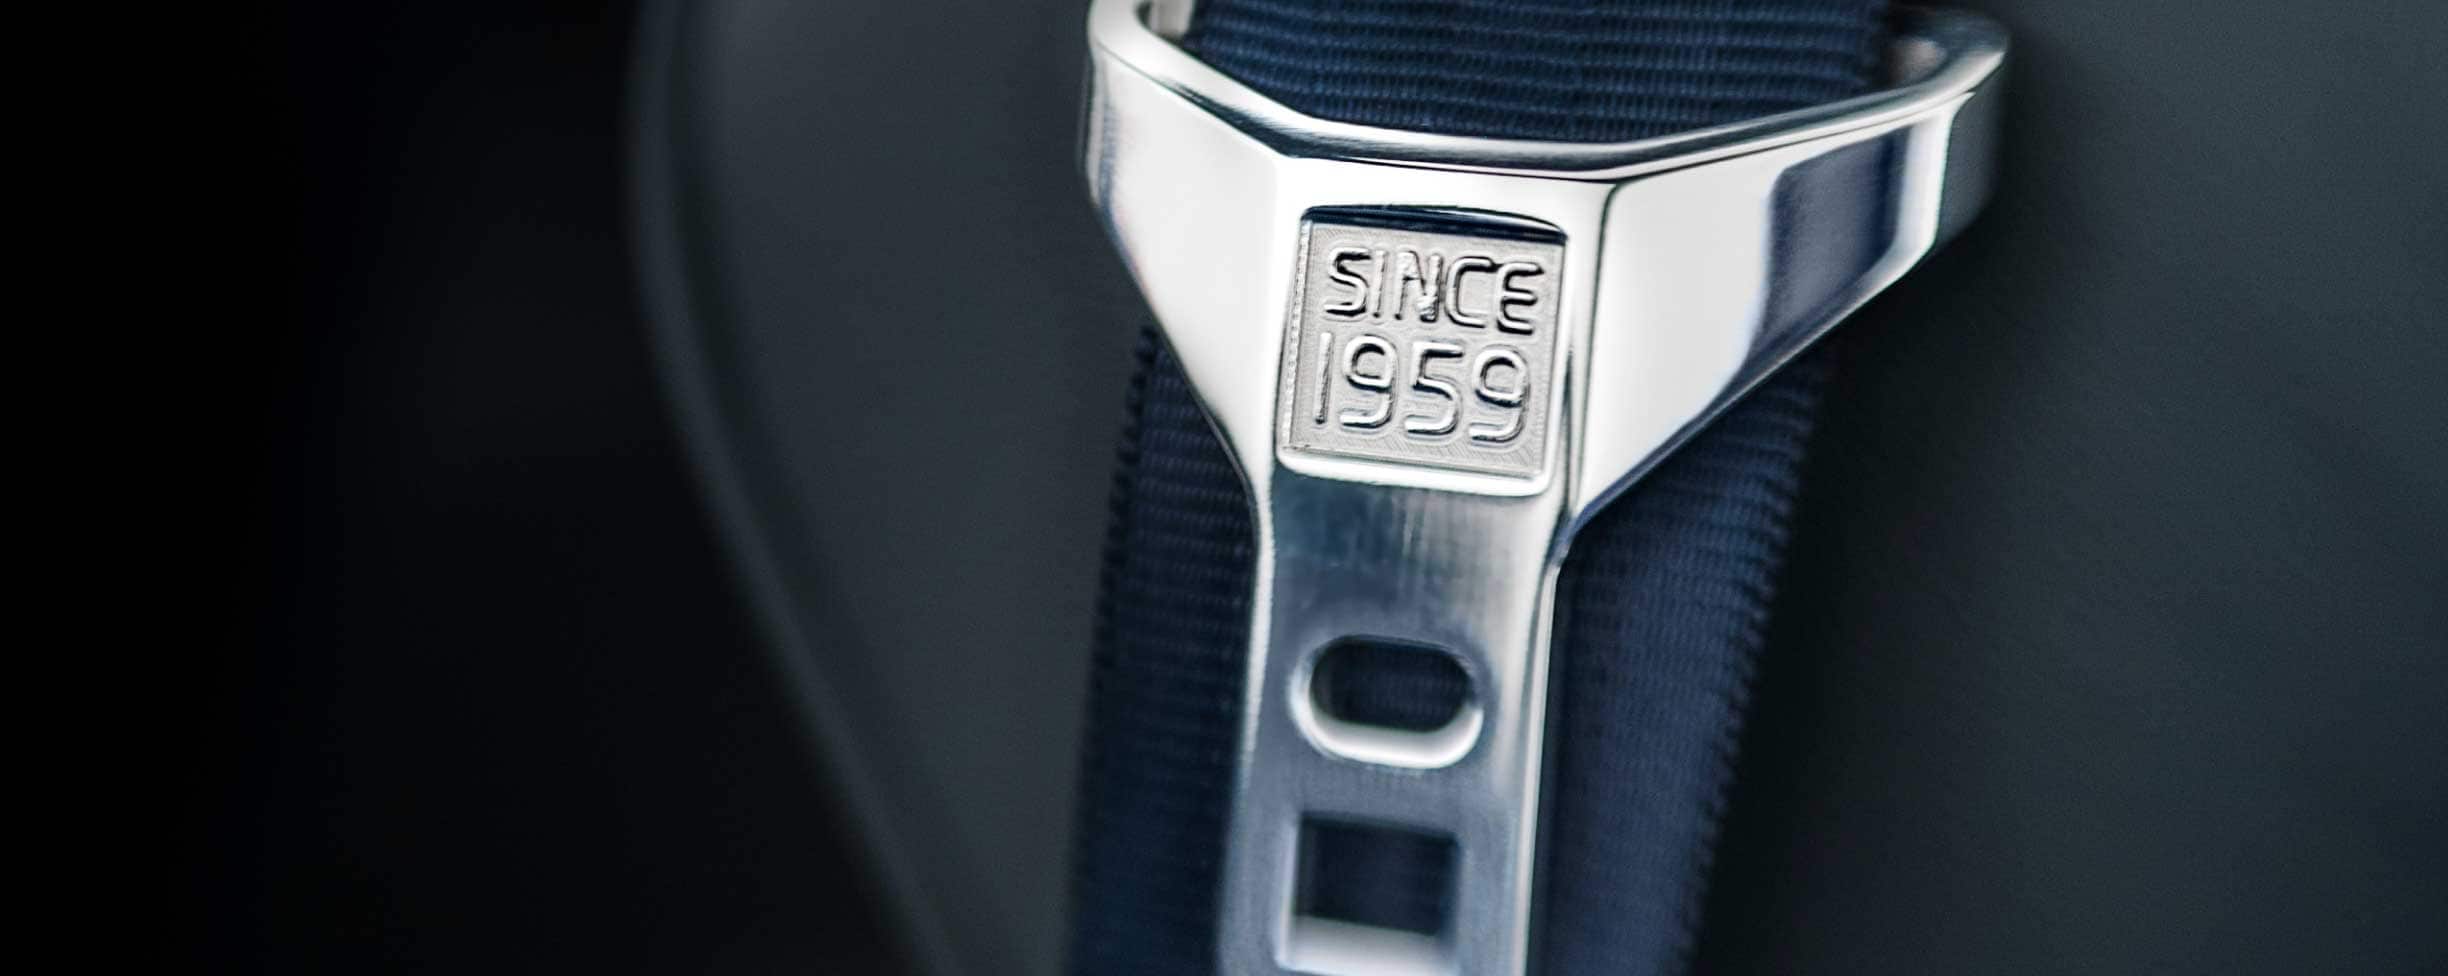 Una cintura di sicurezza in grigio con il testo "Since 1959" (dal 1959) inciso sulla fibbia.